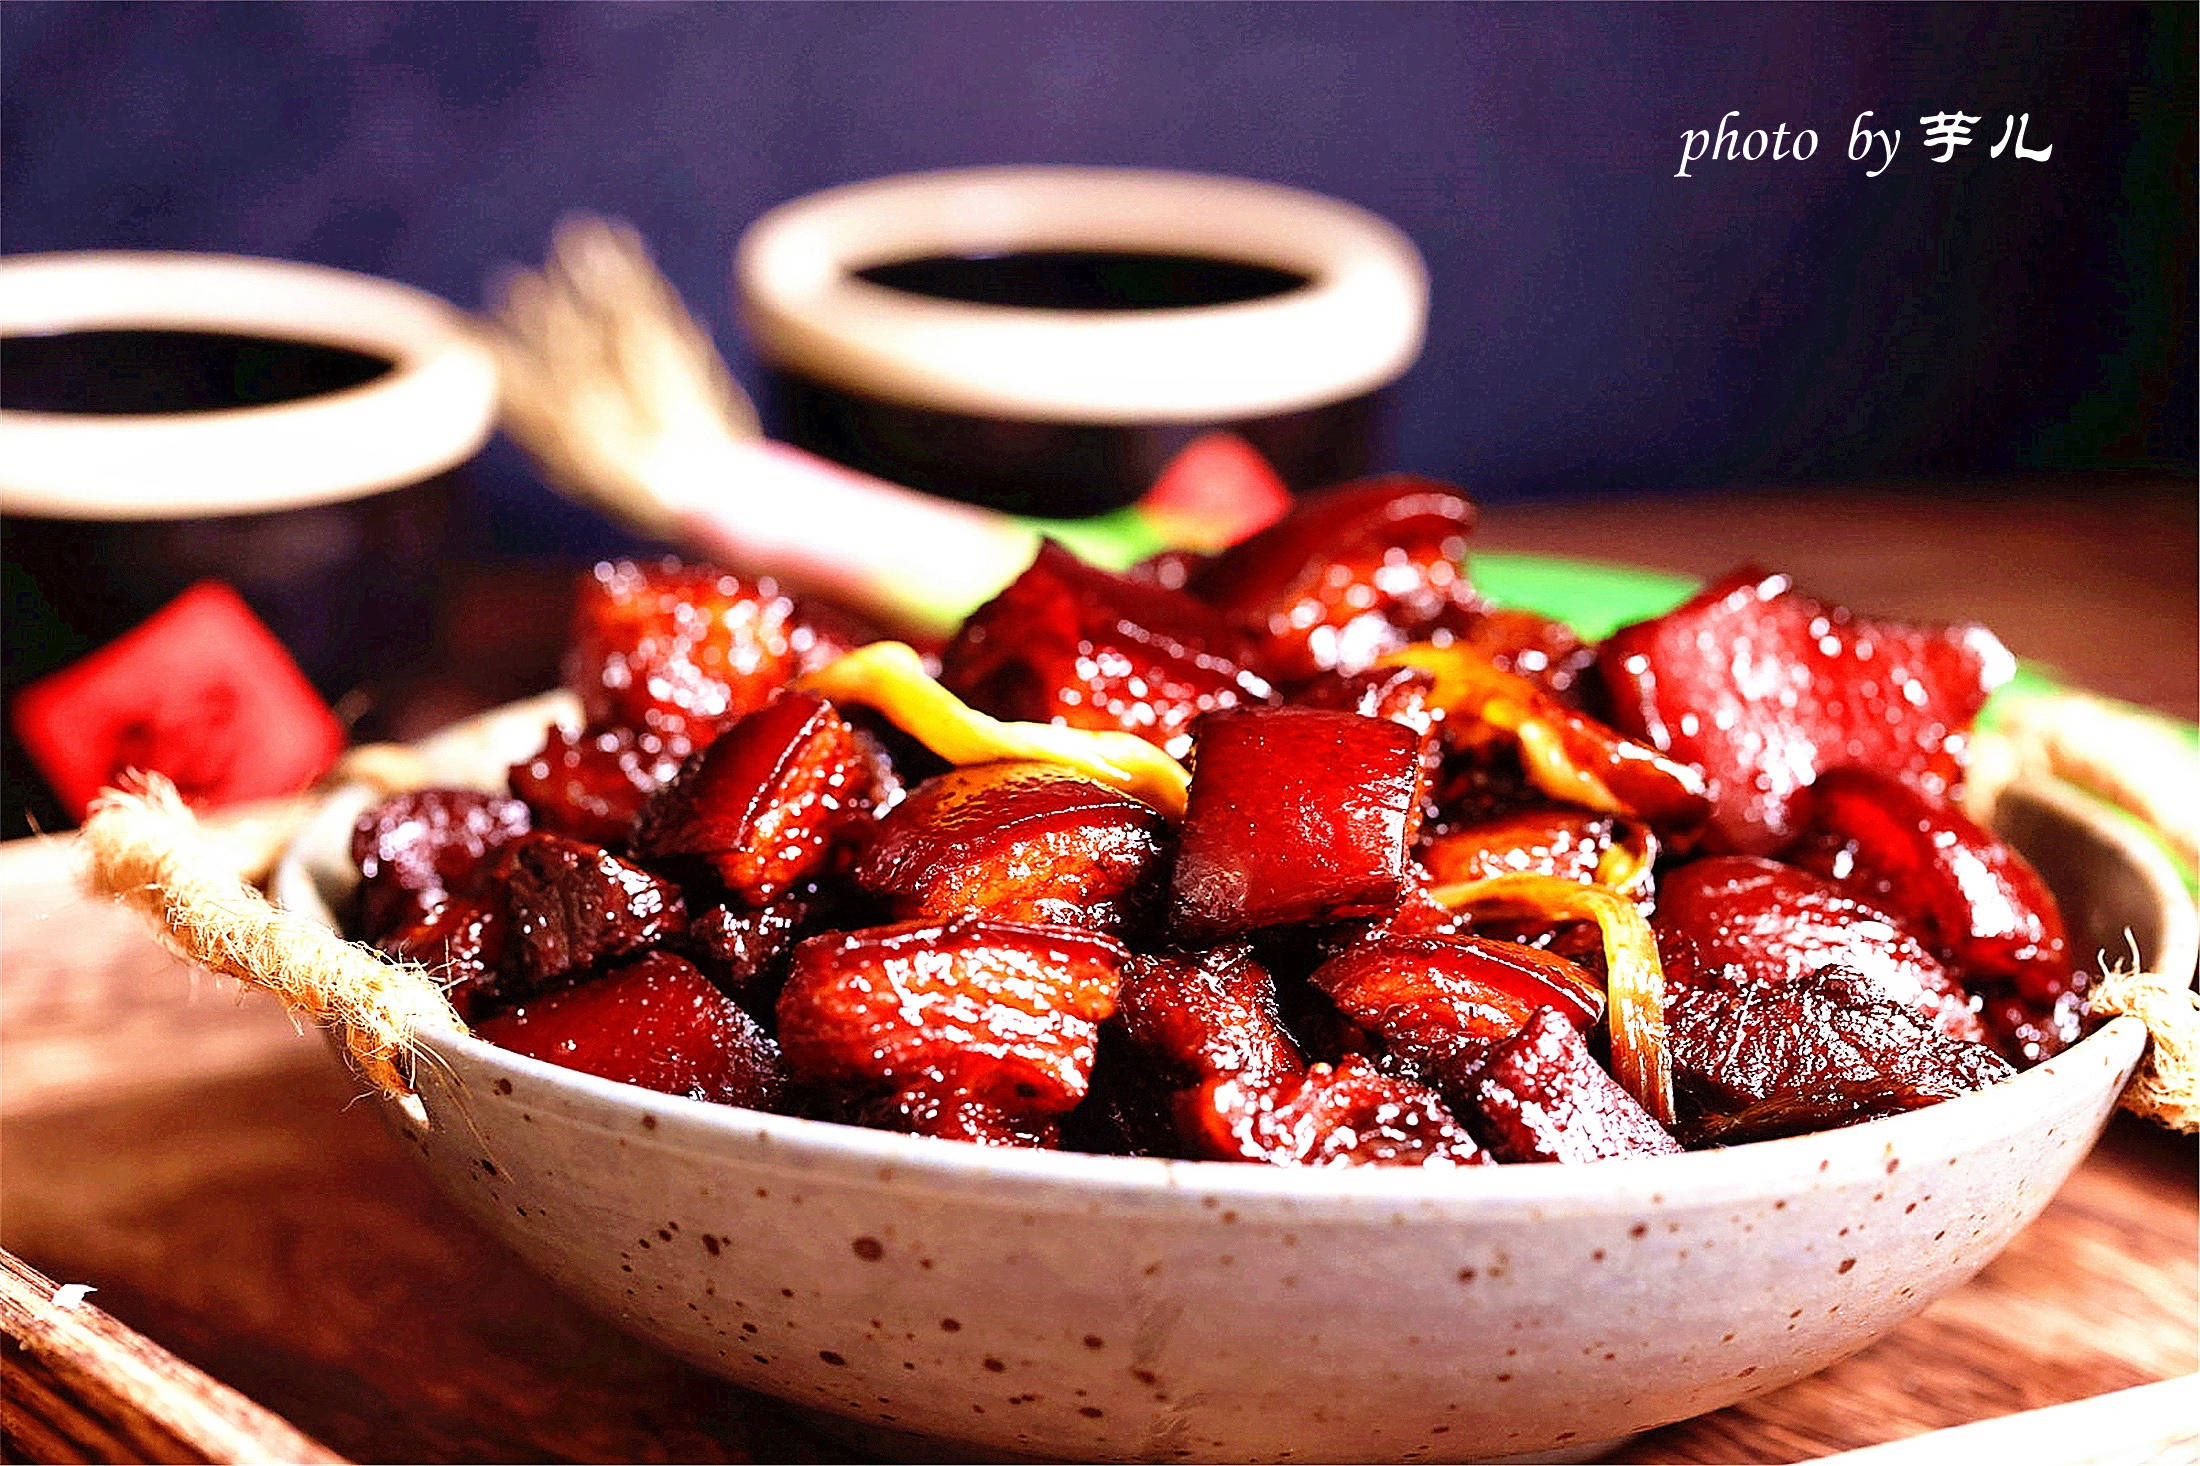 东坡肘子为什么属于川系菜，而东坡肉，东坡茄子属于江浙系菜？